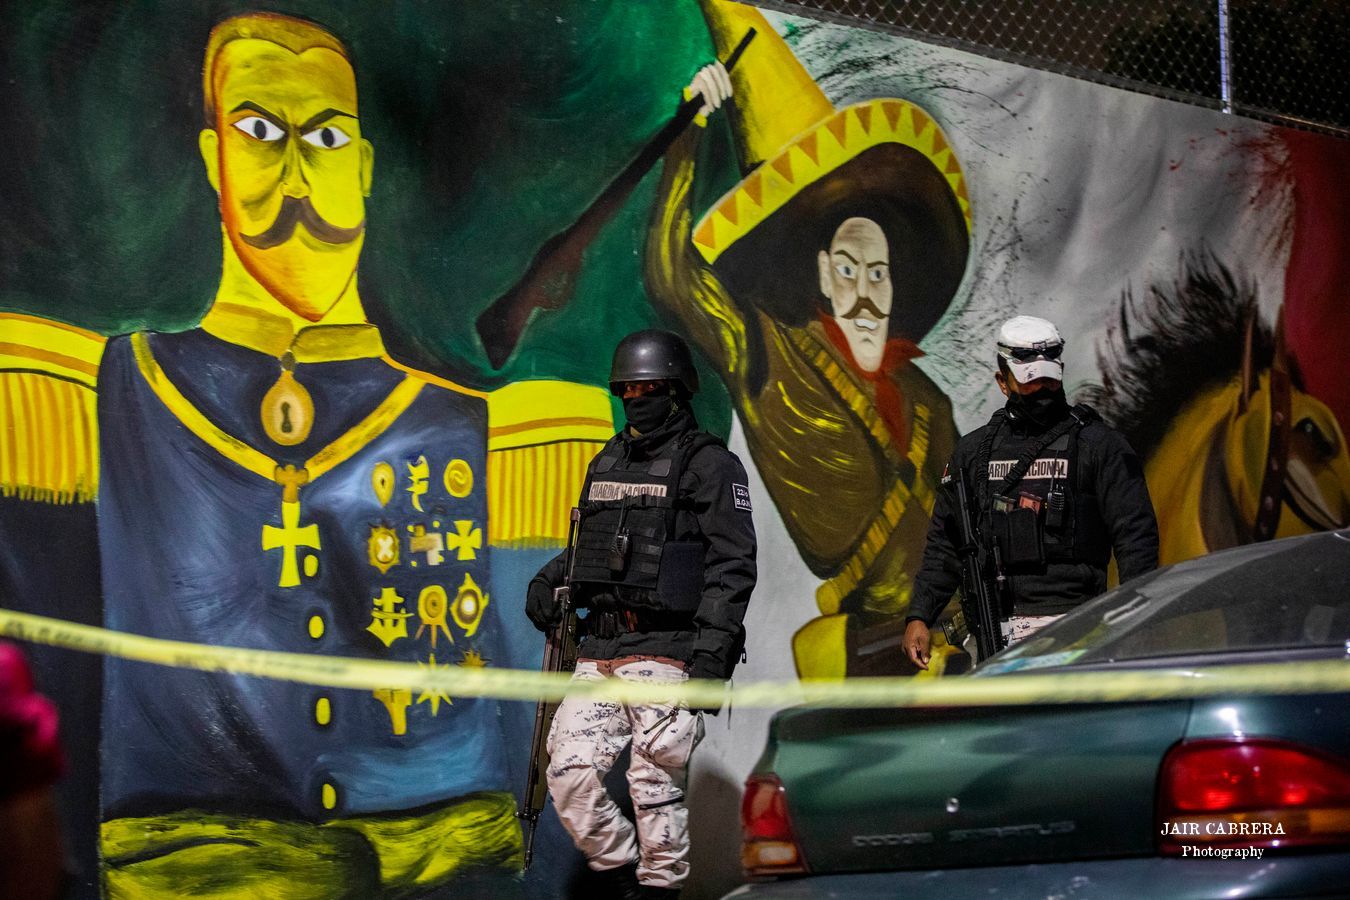 Elementos de la Guardia Nacional resguardan una zona donde dos personas fueron asesinadas en calles de la colonia Defensores de la República, alcaldía Gustavo A. Madero, Ciudad de México.Enero 2022